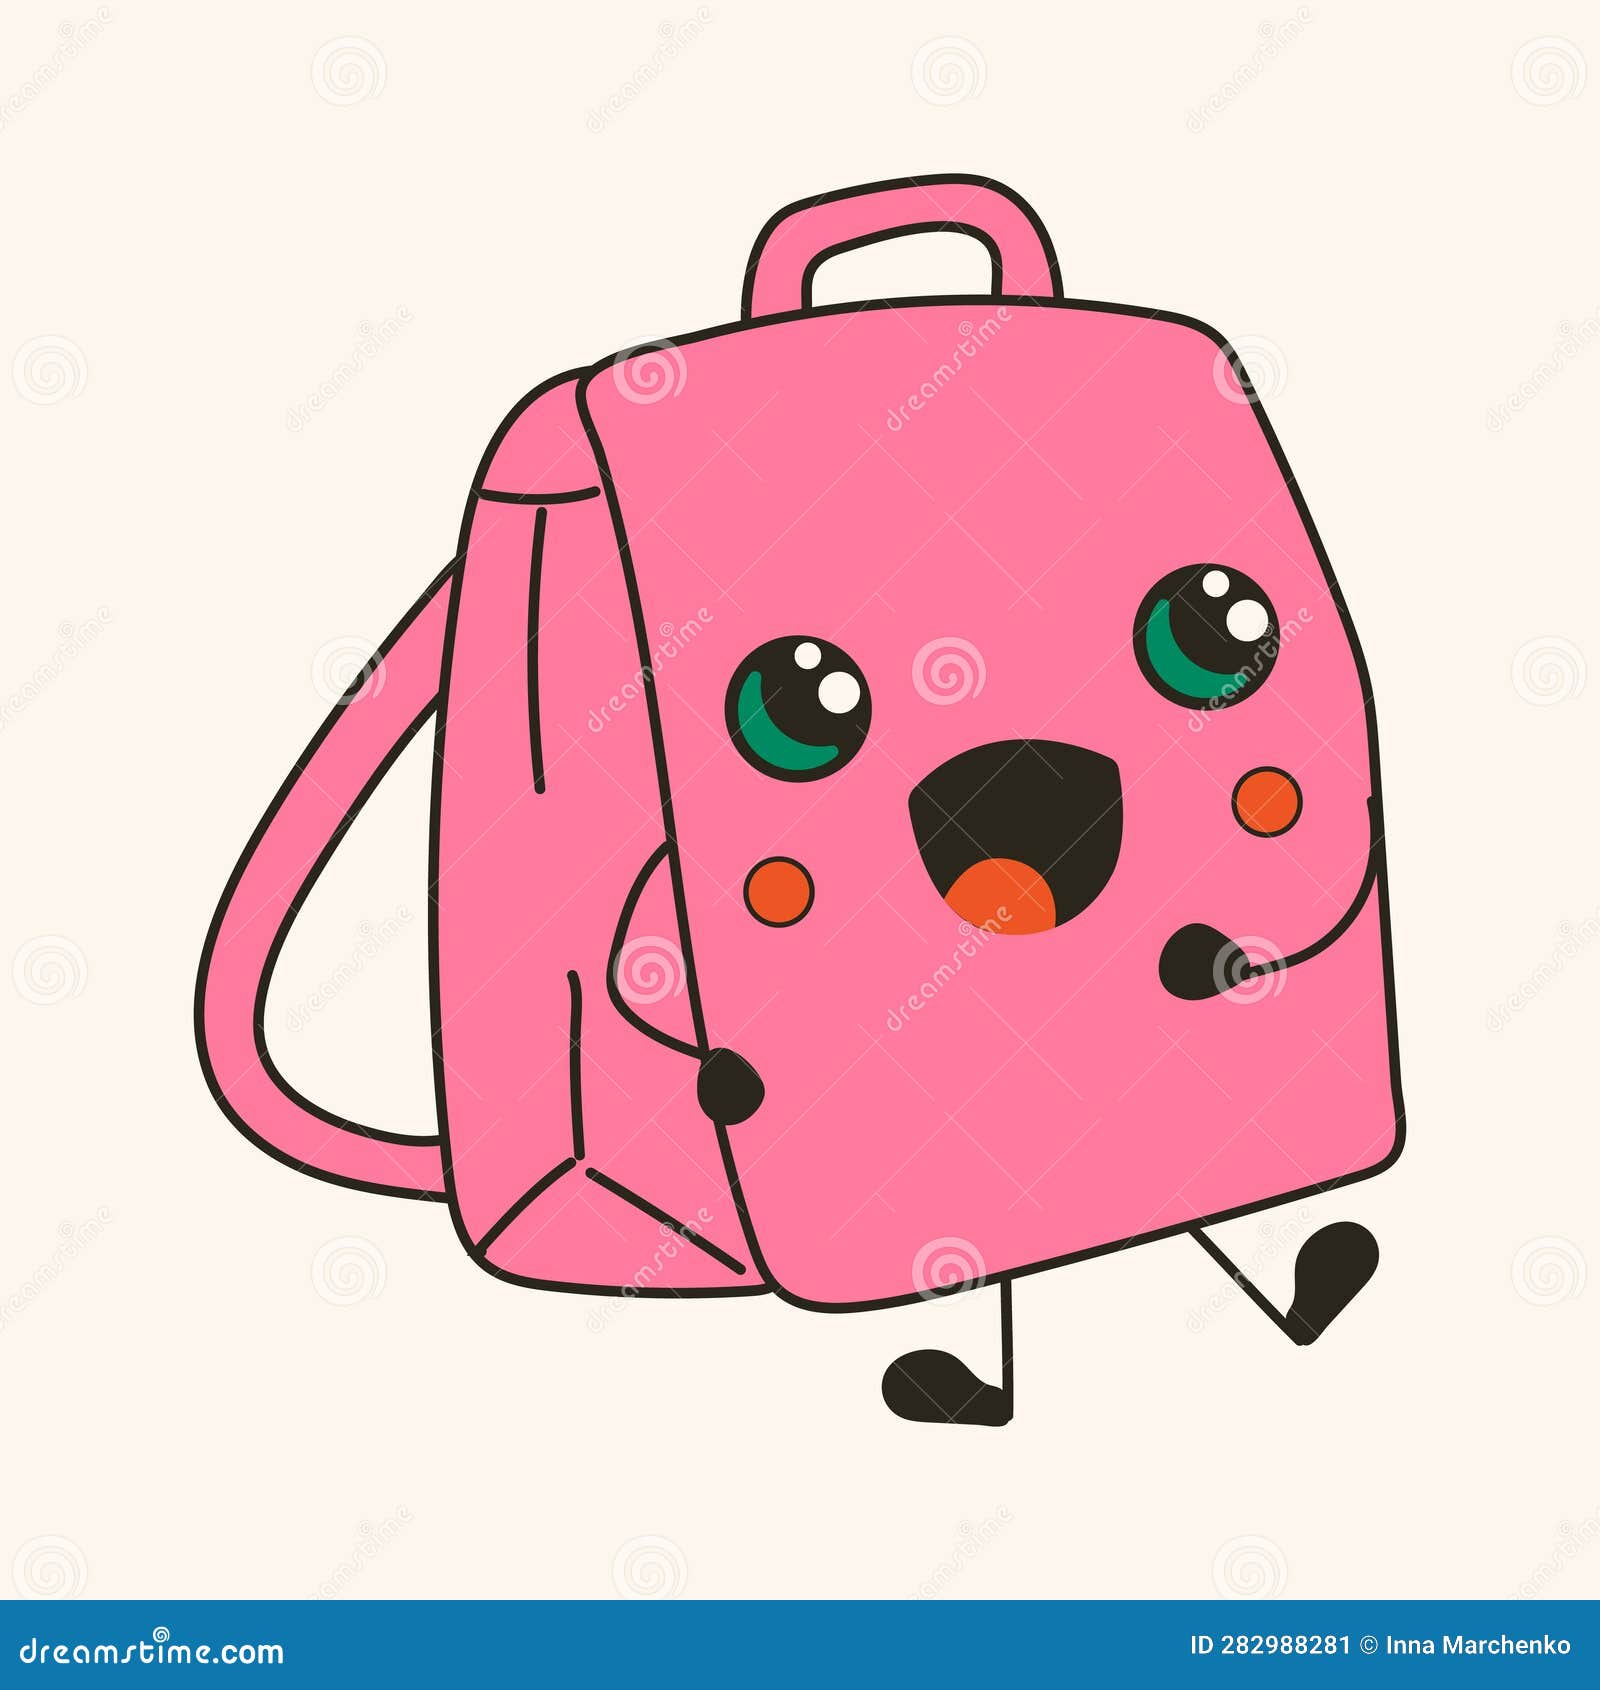 Cute Happy Funny Backpack with Kawaii Eyes. Cartoon Cheerful School ...